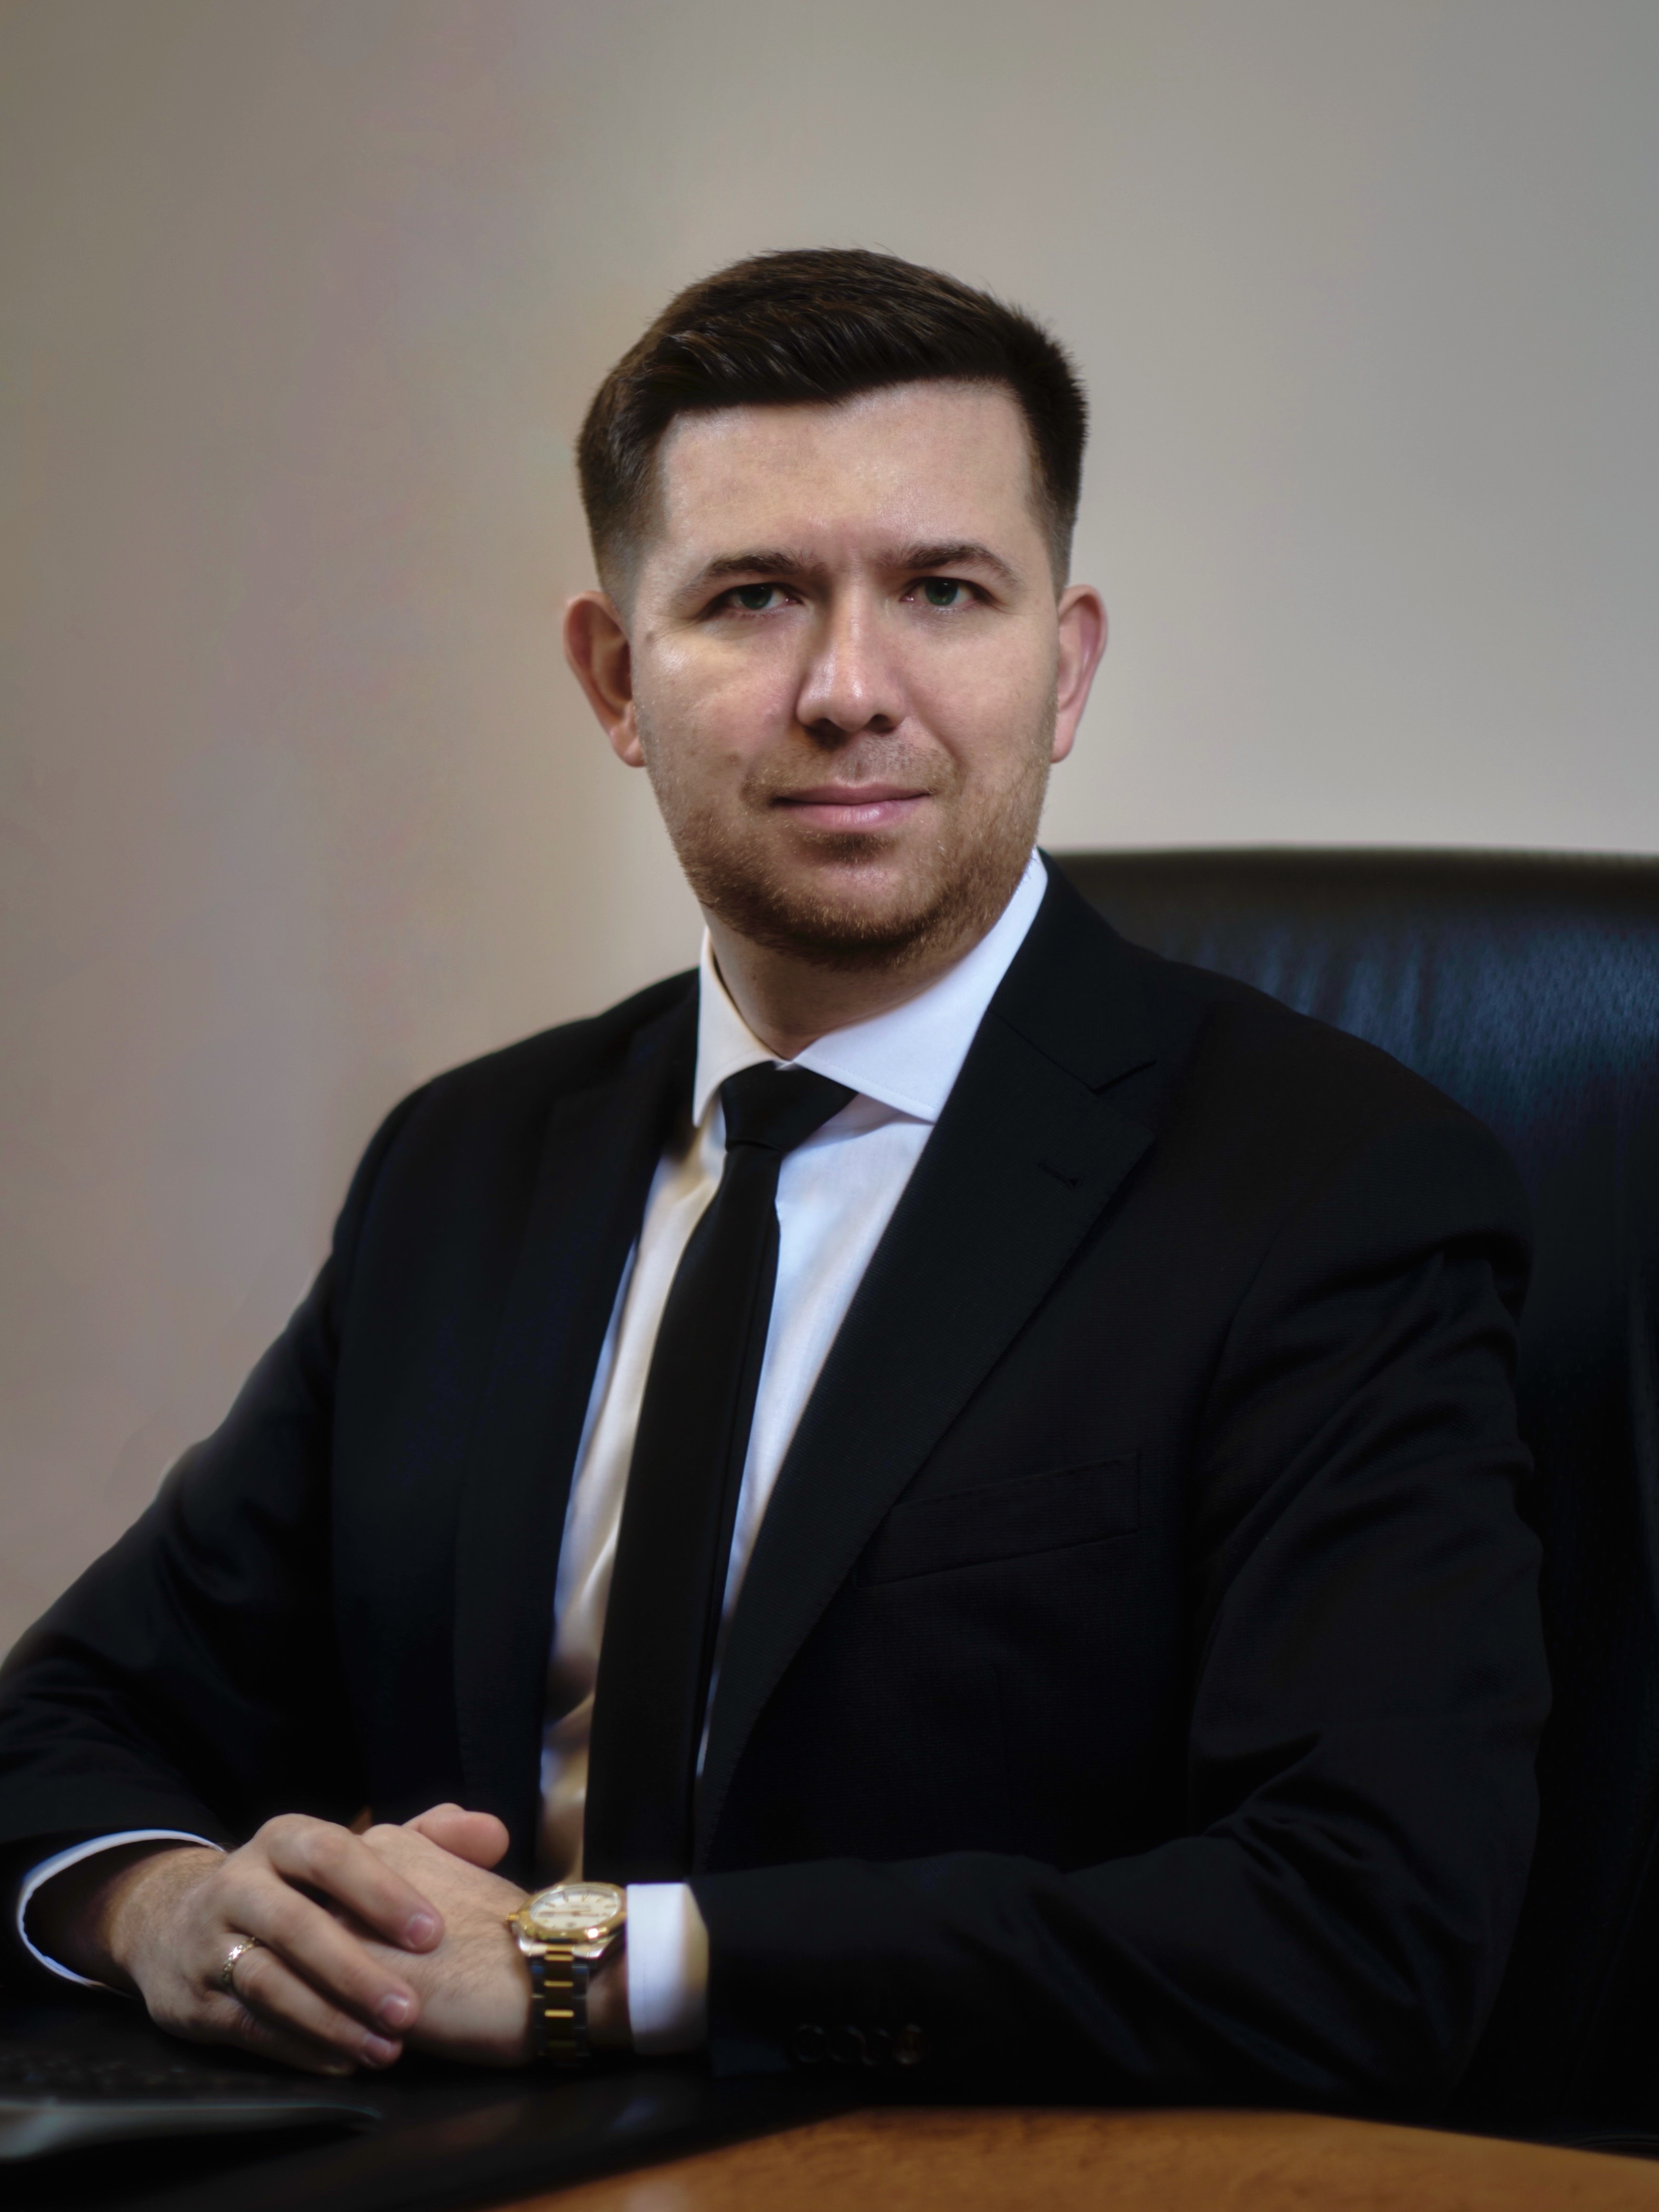 Сейфетдинов Ренат Шамилевич — исполнительный директор, управляющий филиалом ПАО «БАНК УРАЛСИБ» в Санкт-Петербурге 